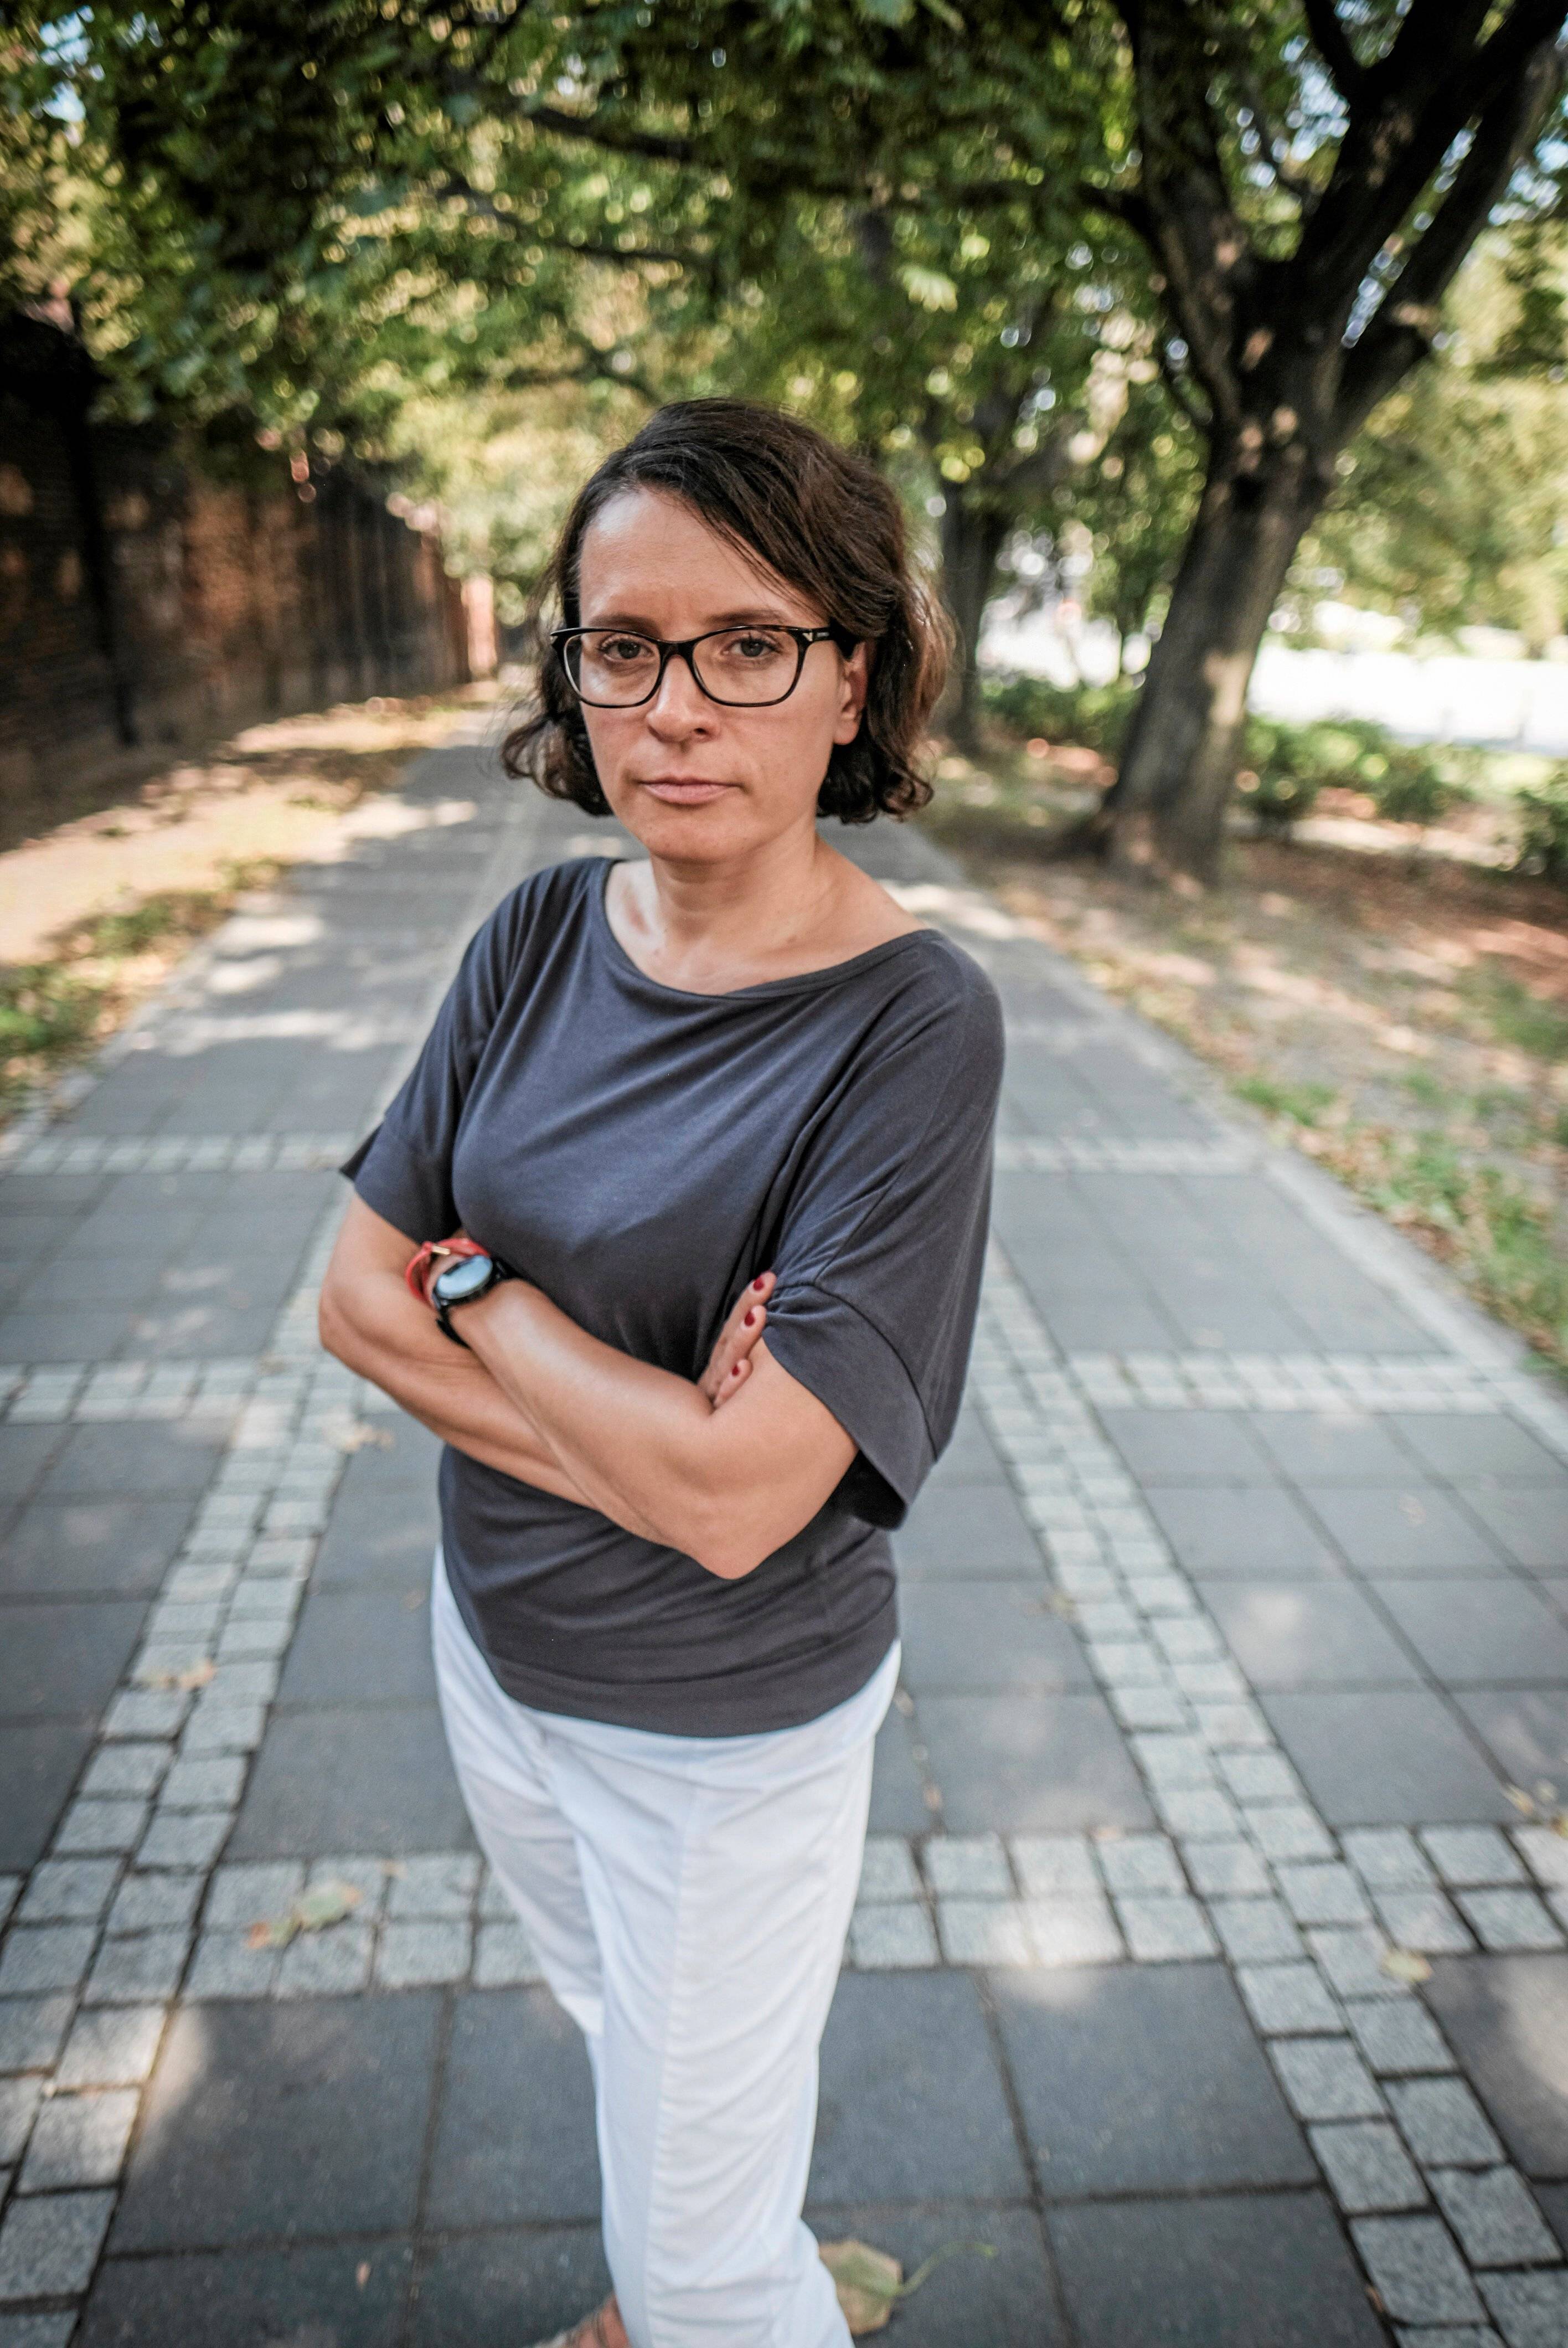 29.08.2019 Poznan . Sedzina Monika Frackowiak .
Fot. Piotr Skornicki / Agencja Gazeta